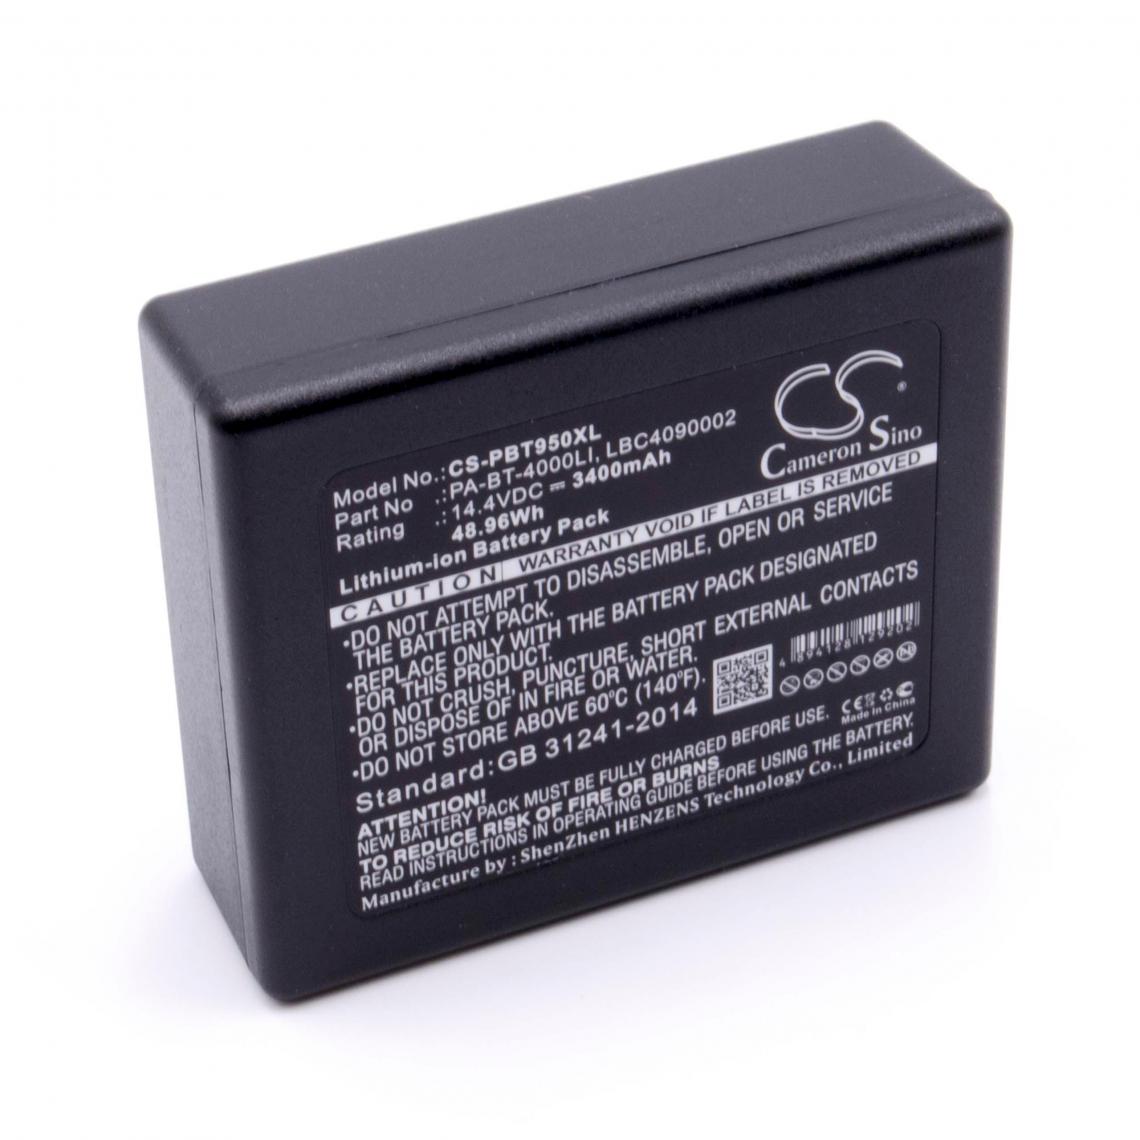 Vhbw - vhbw Li-Ion batterie 3400mAh (14.4V) pour imprimante à étiquette comme Brother LBC4090002, LBD709-001, LBF3250001, PA-BT-4000LI - Imprimante Jet d'encre